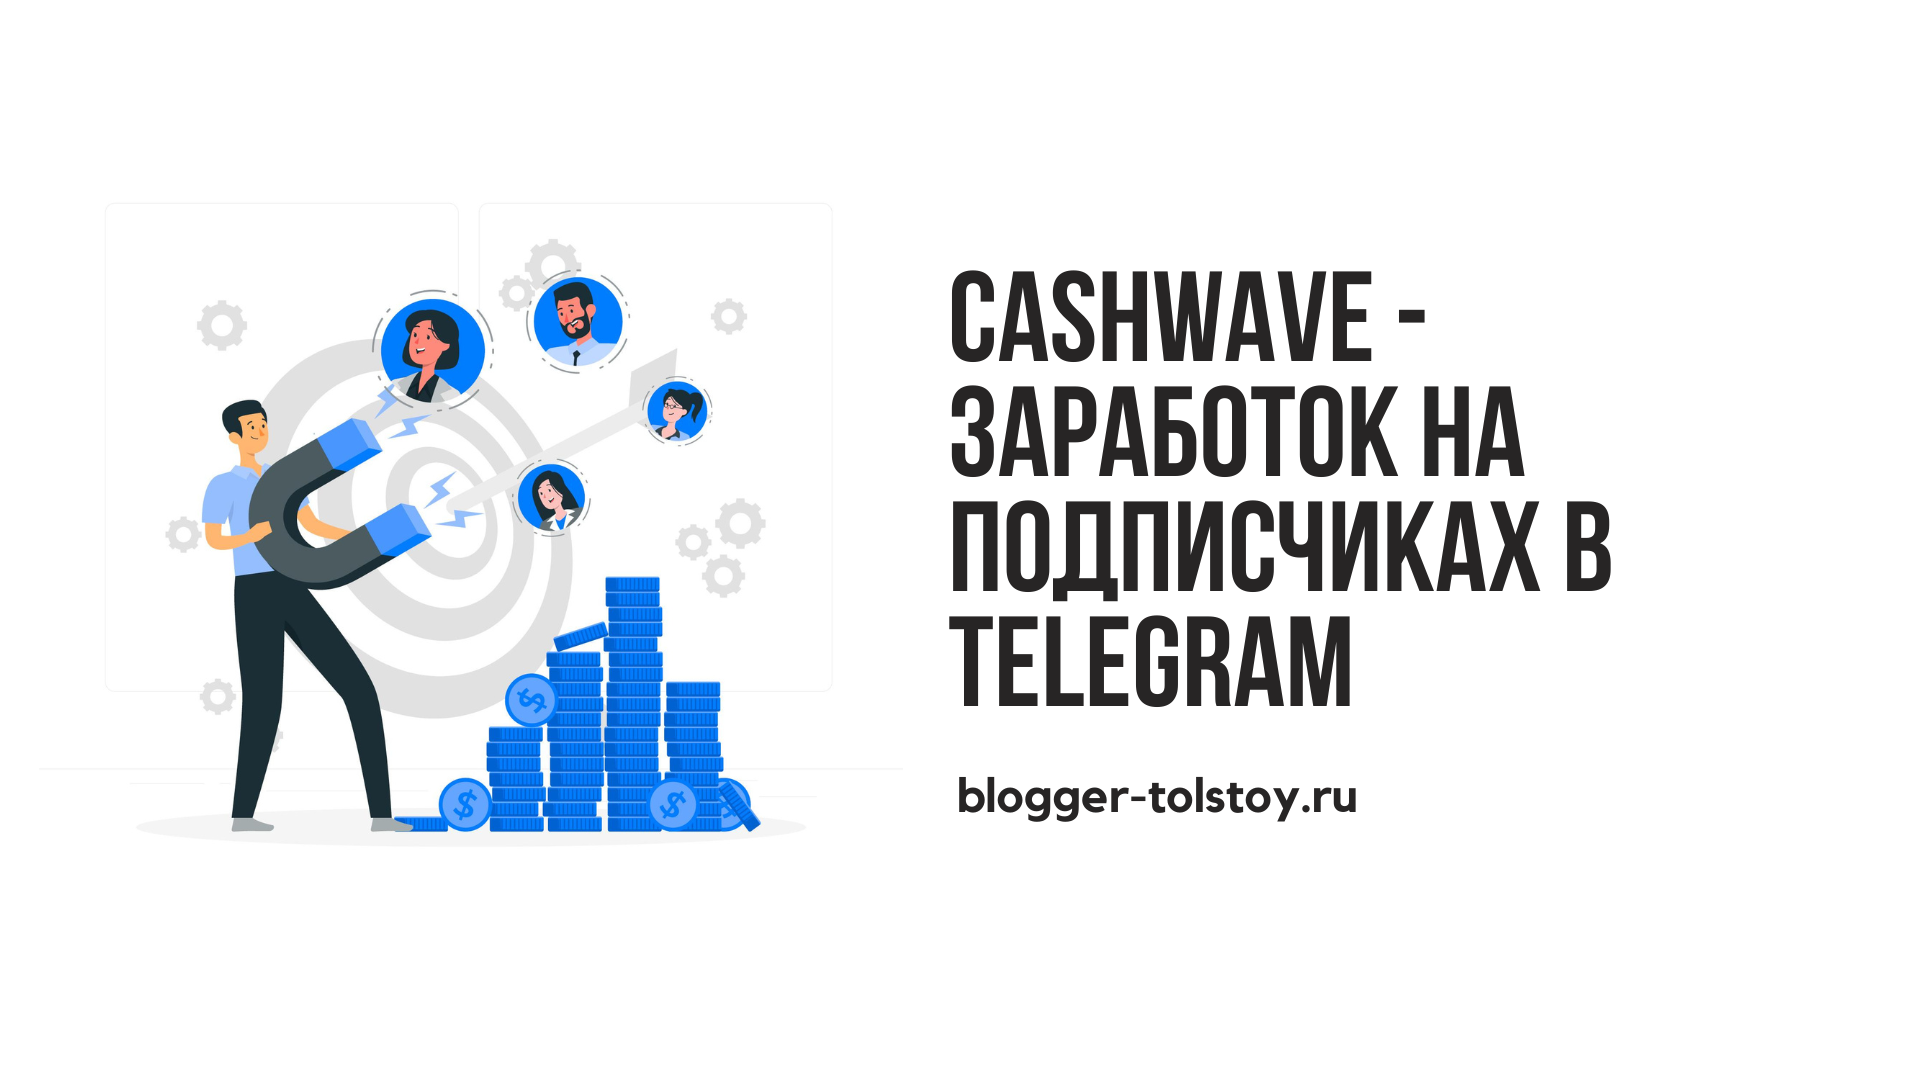 Превью к статье "Cashwave - заработок на подписчиках в Telegram".